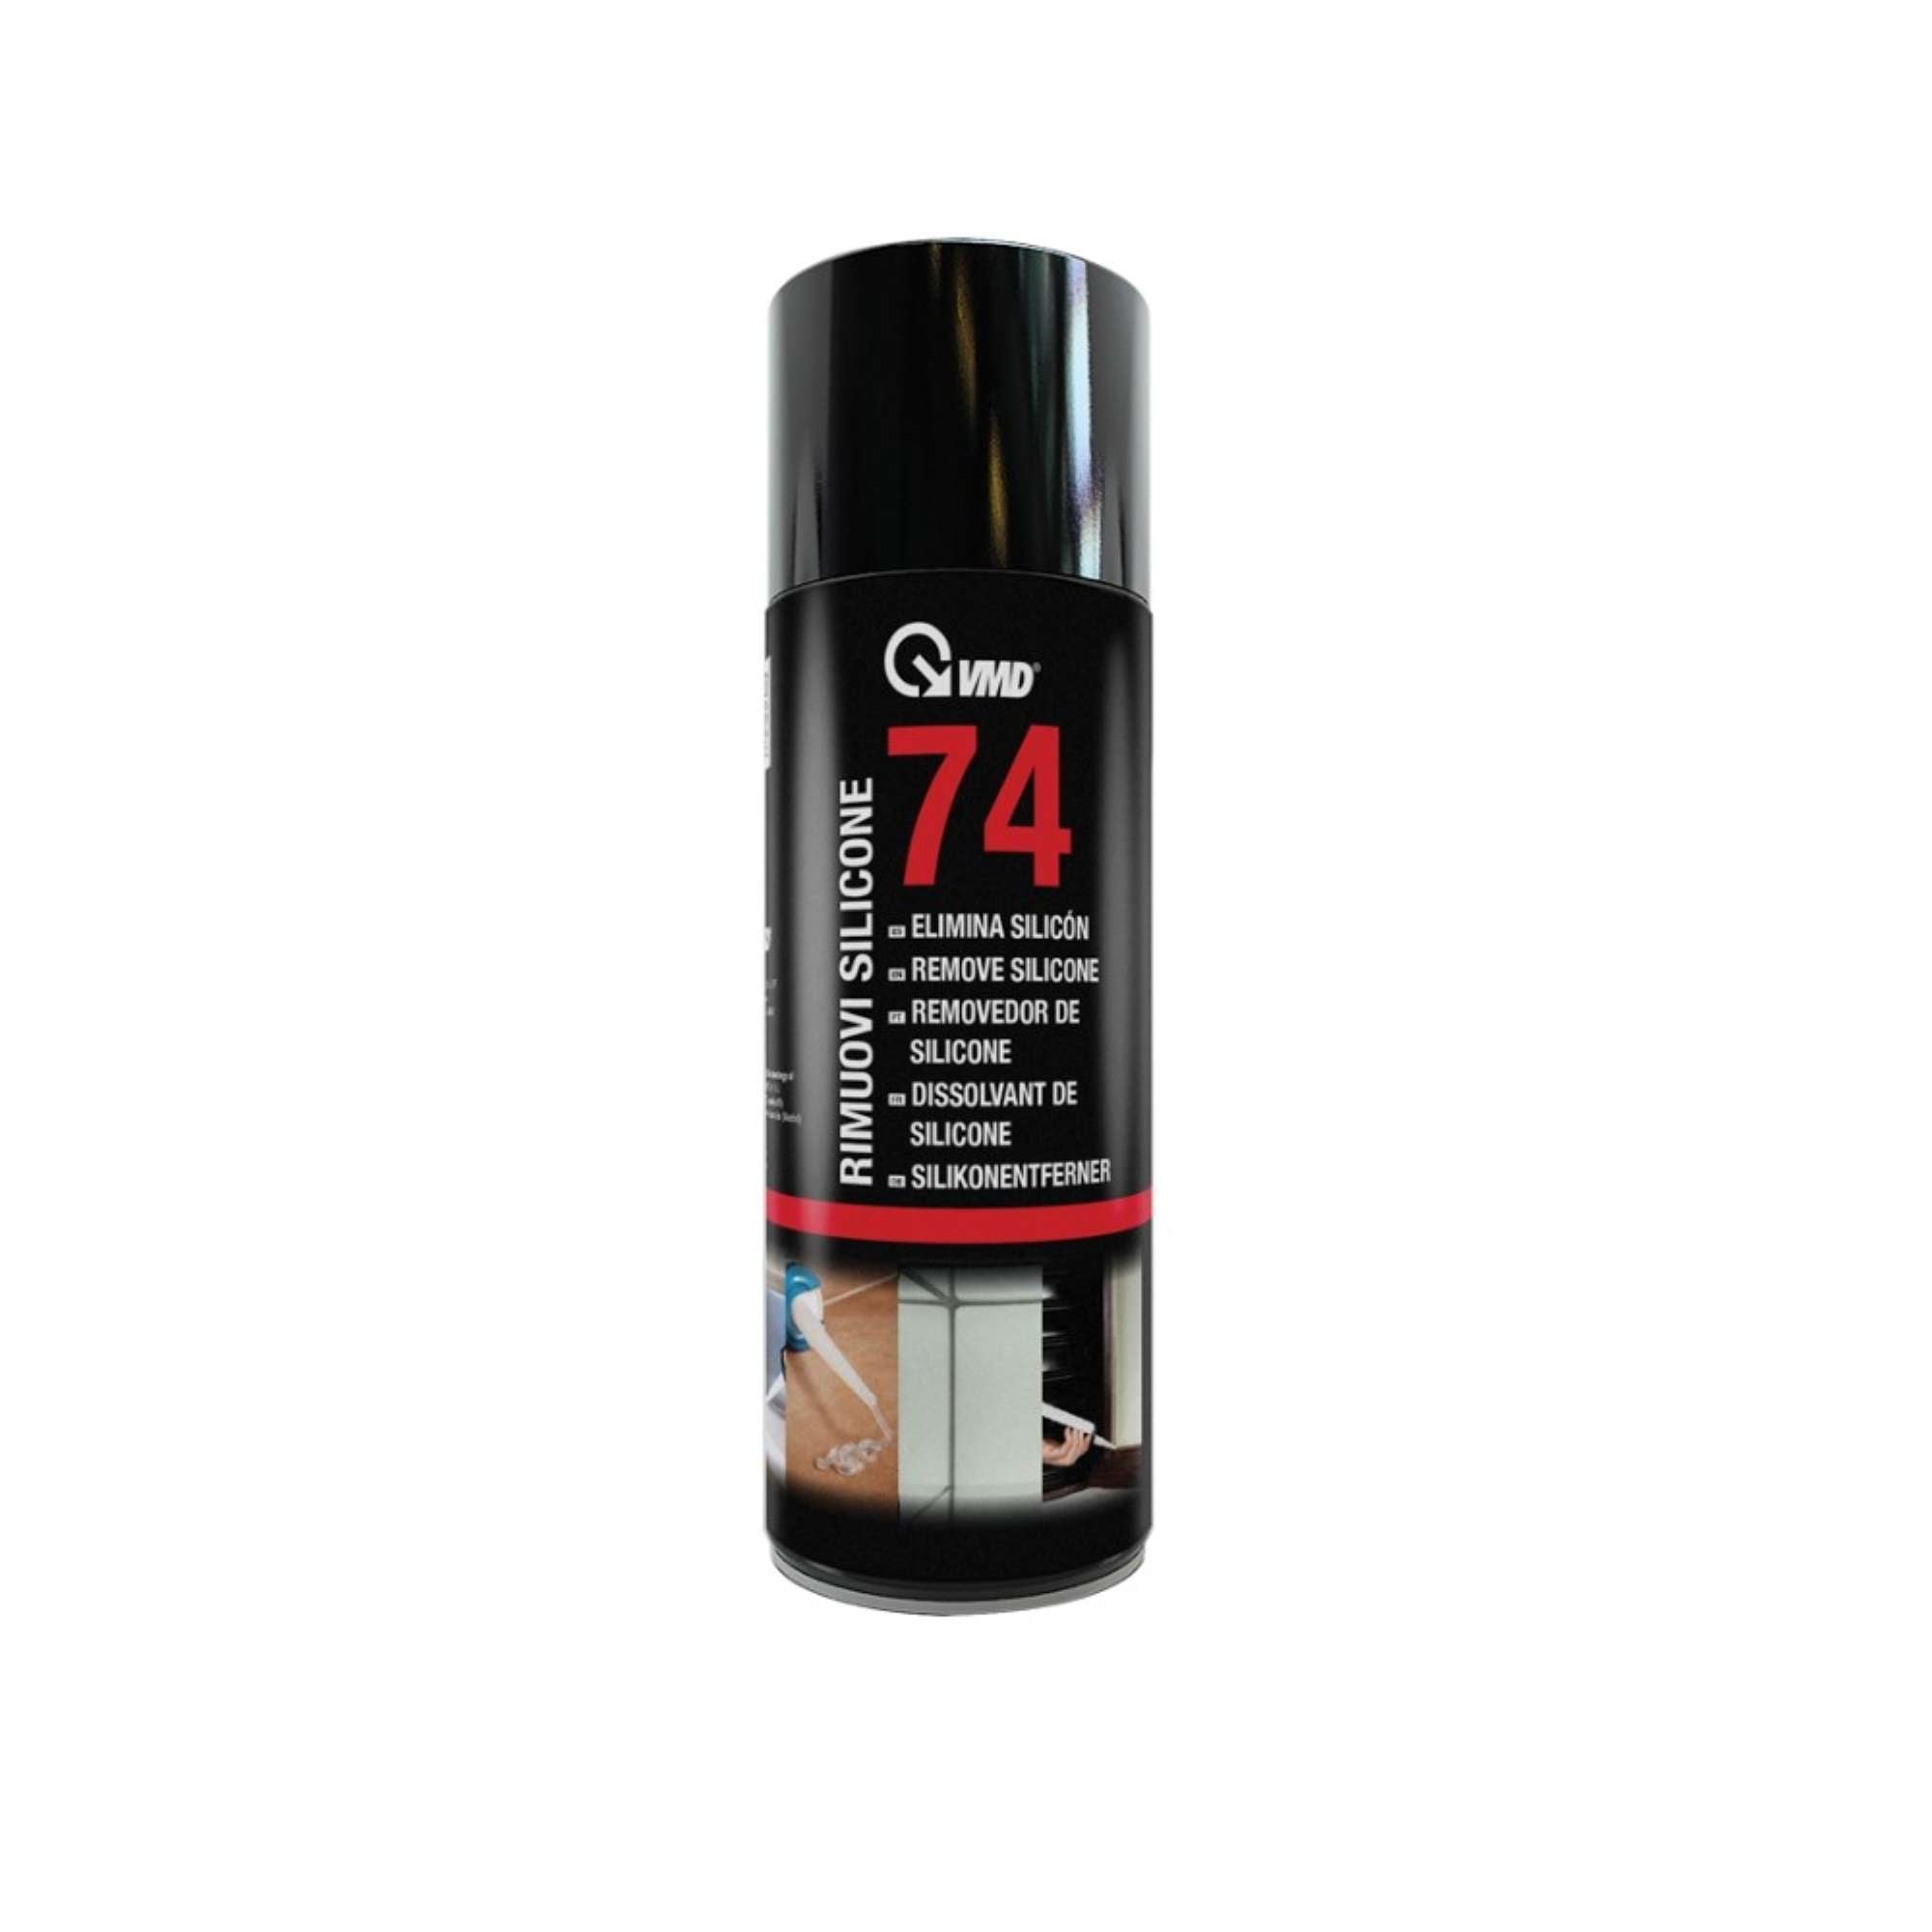 Silicone Remover Spray 400ml - VMD 74